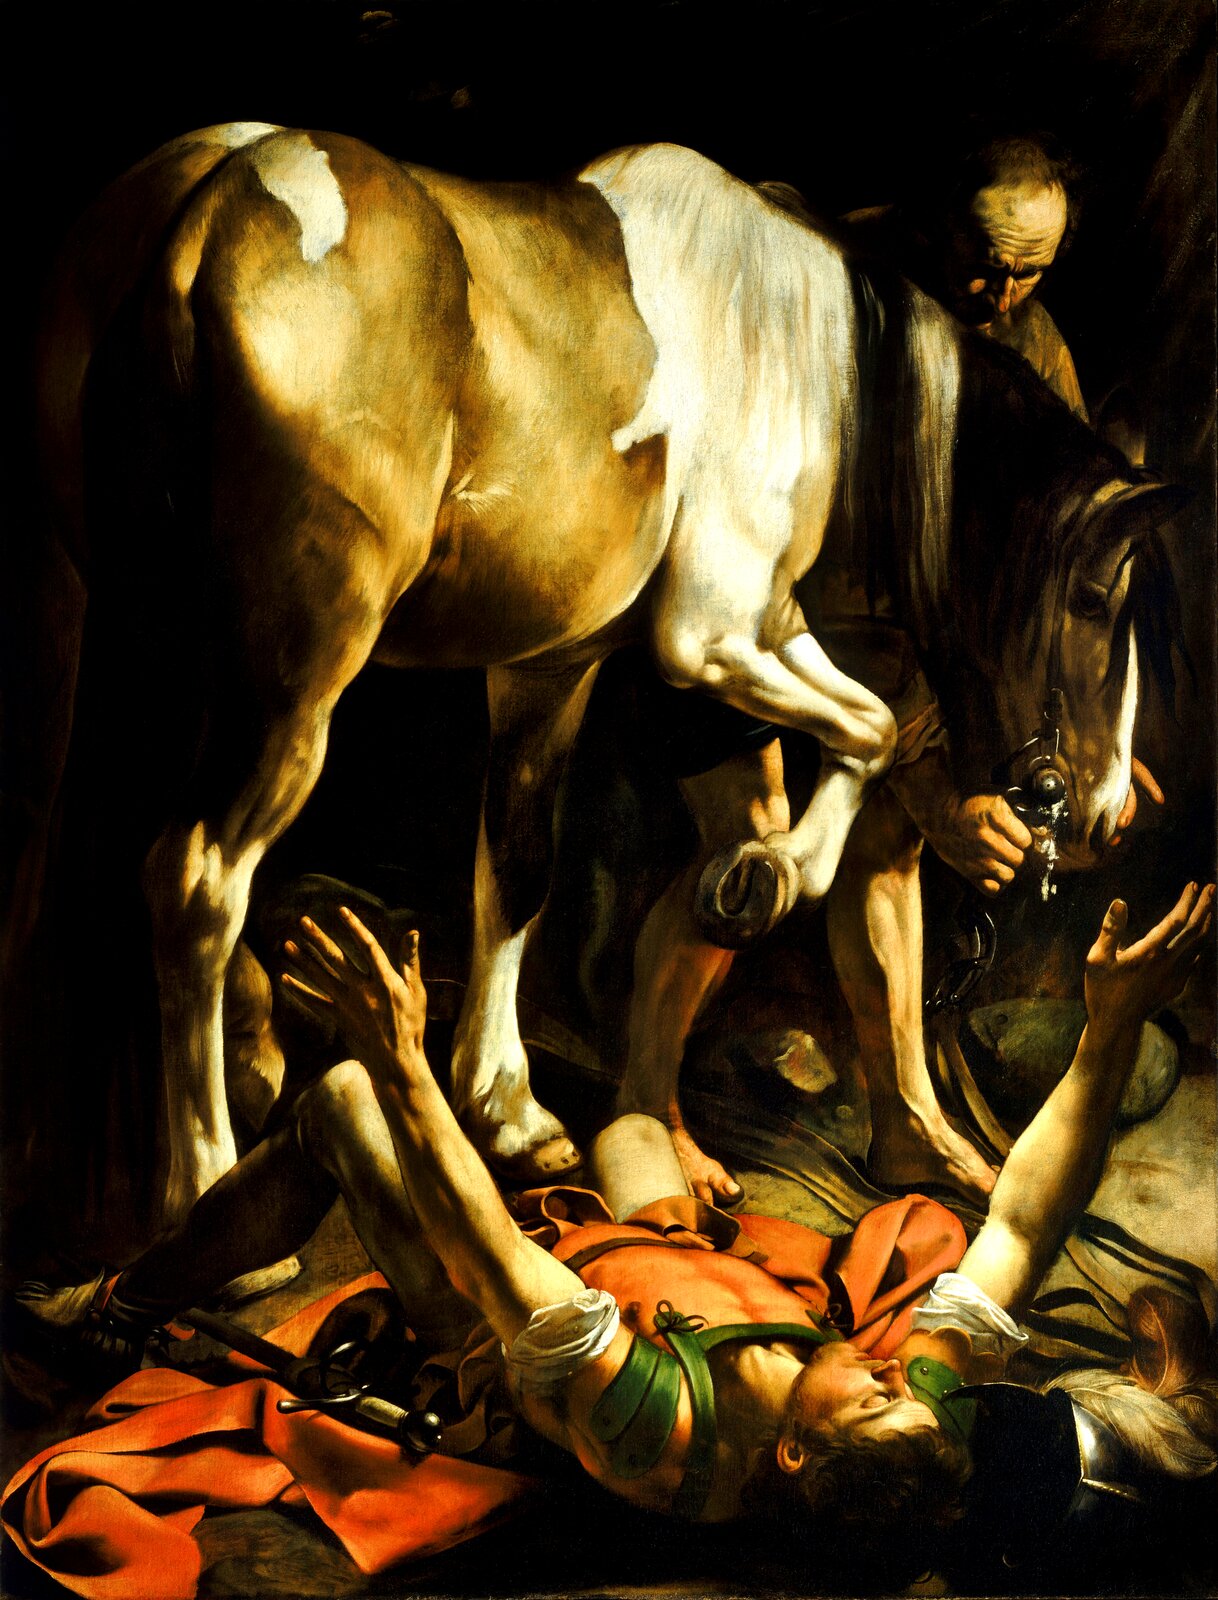 Ilustracja o kształcie pionowego prostokąta przedstawia obraz Caravaggia „Nawrócenie świętego Pawła”.  Ukazuje scenę zbiorową, na którą składają się dwaj mężczyźni i koń. U dołu obrazu na udrapowanym, czerwonym płaszczu leży mężczyzna z uniesionymi do góry rękoma. Przed nim stoi koń, trzyma kopyto nad Pawłem. Większość ciała zwierzęcia obrócona jest tyłem w kierunku widza. Zza konia przypatruje się scenie stajenny, którego widoczna jest tylko głowa i fragment ramion. W ukazanej na czarnym tle scenie światło mocno oświetla Pawła i konia. 